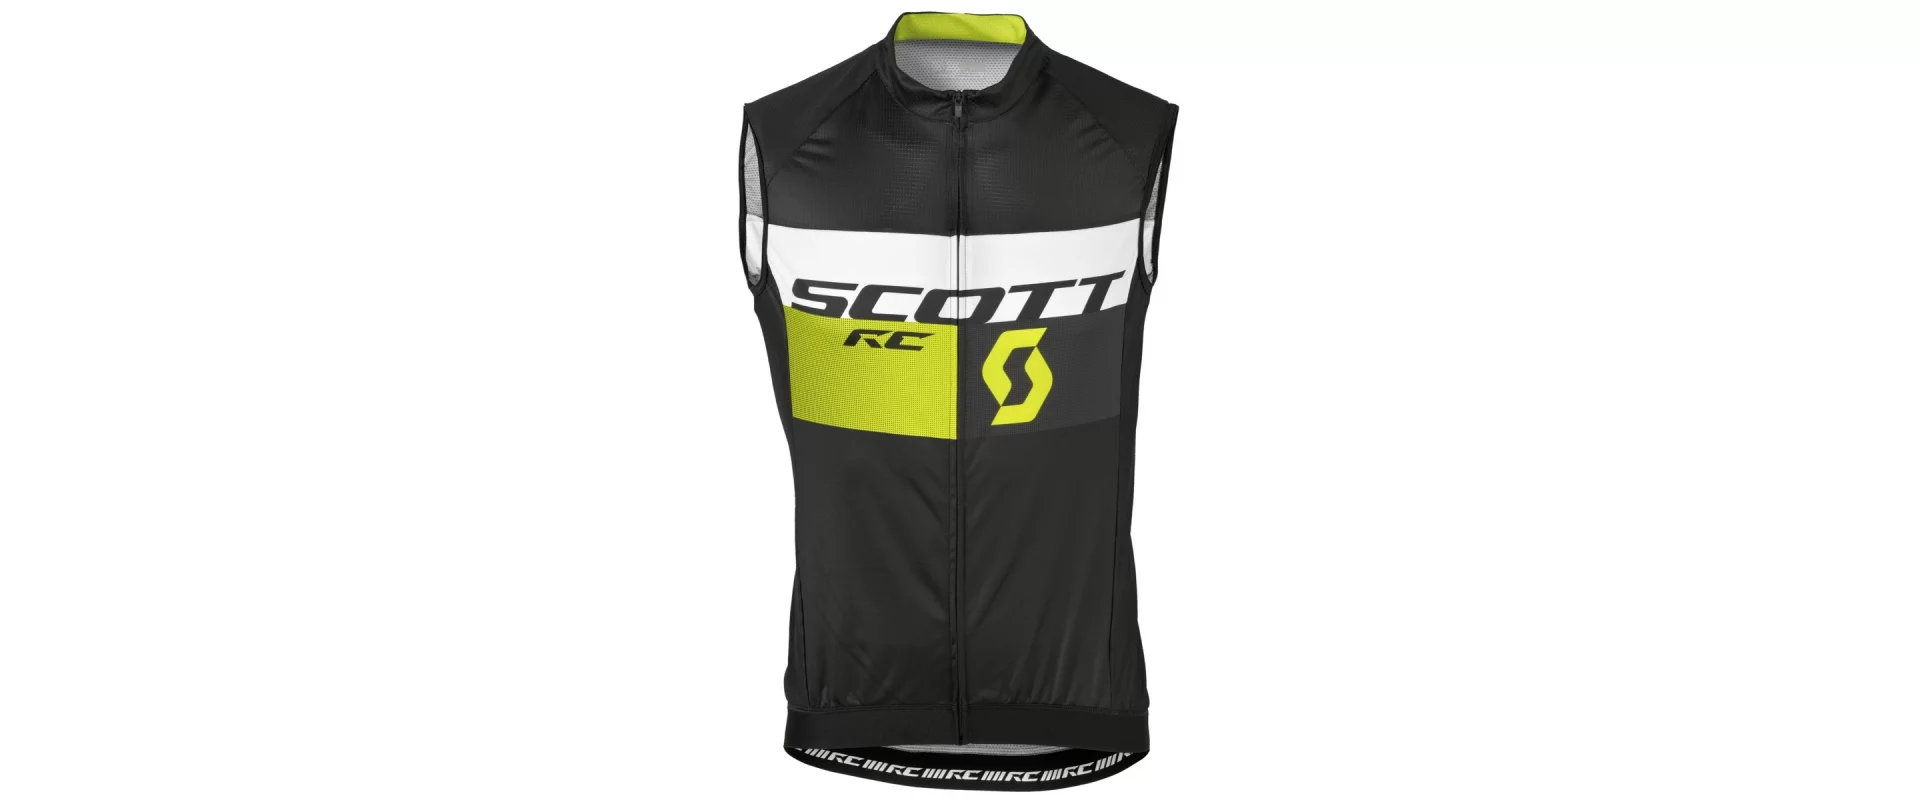 Scott Rc Pro Vest / Мужской веложилет